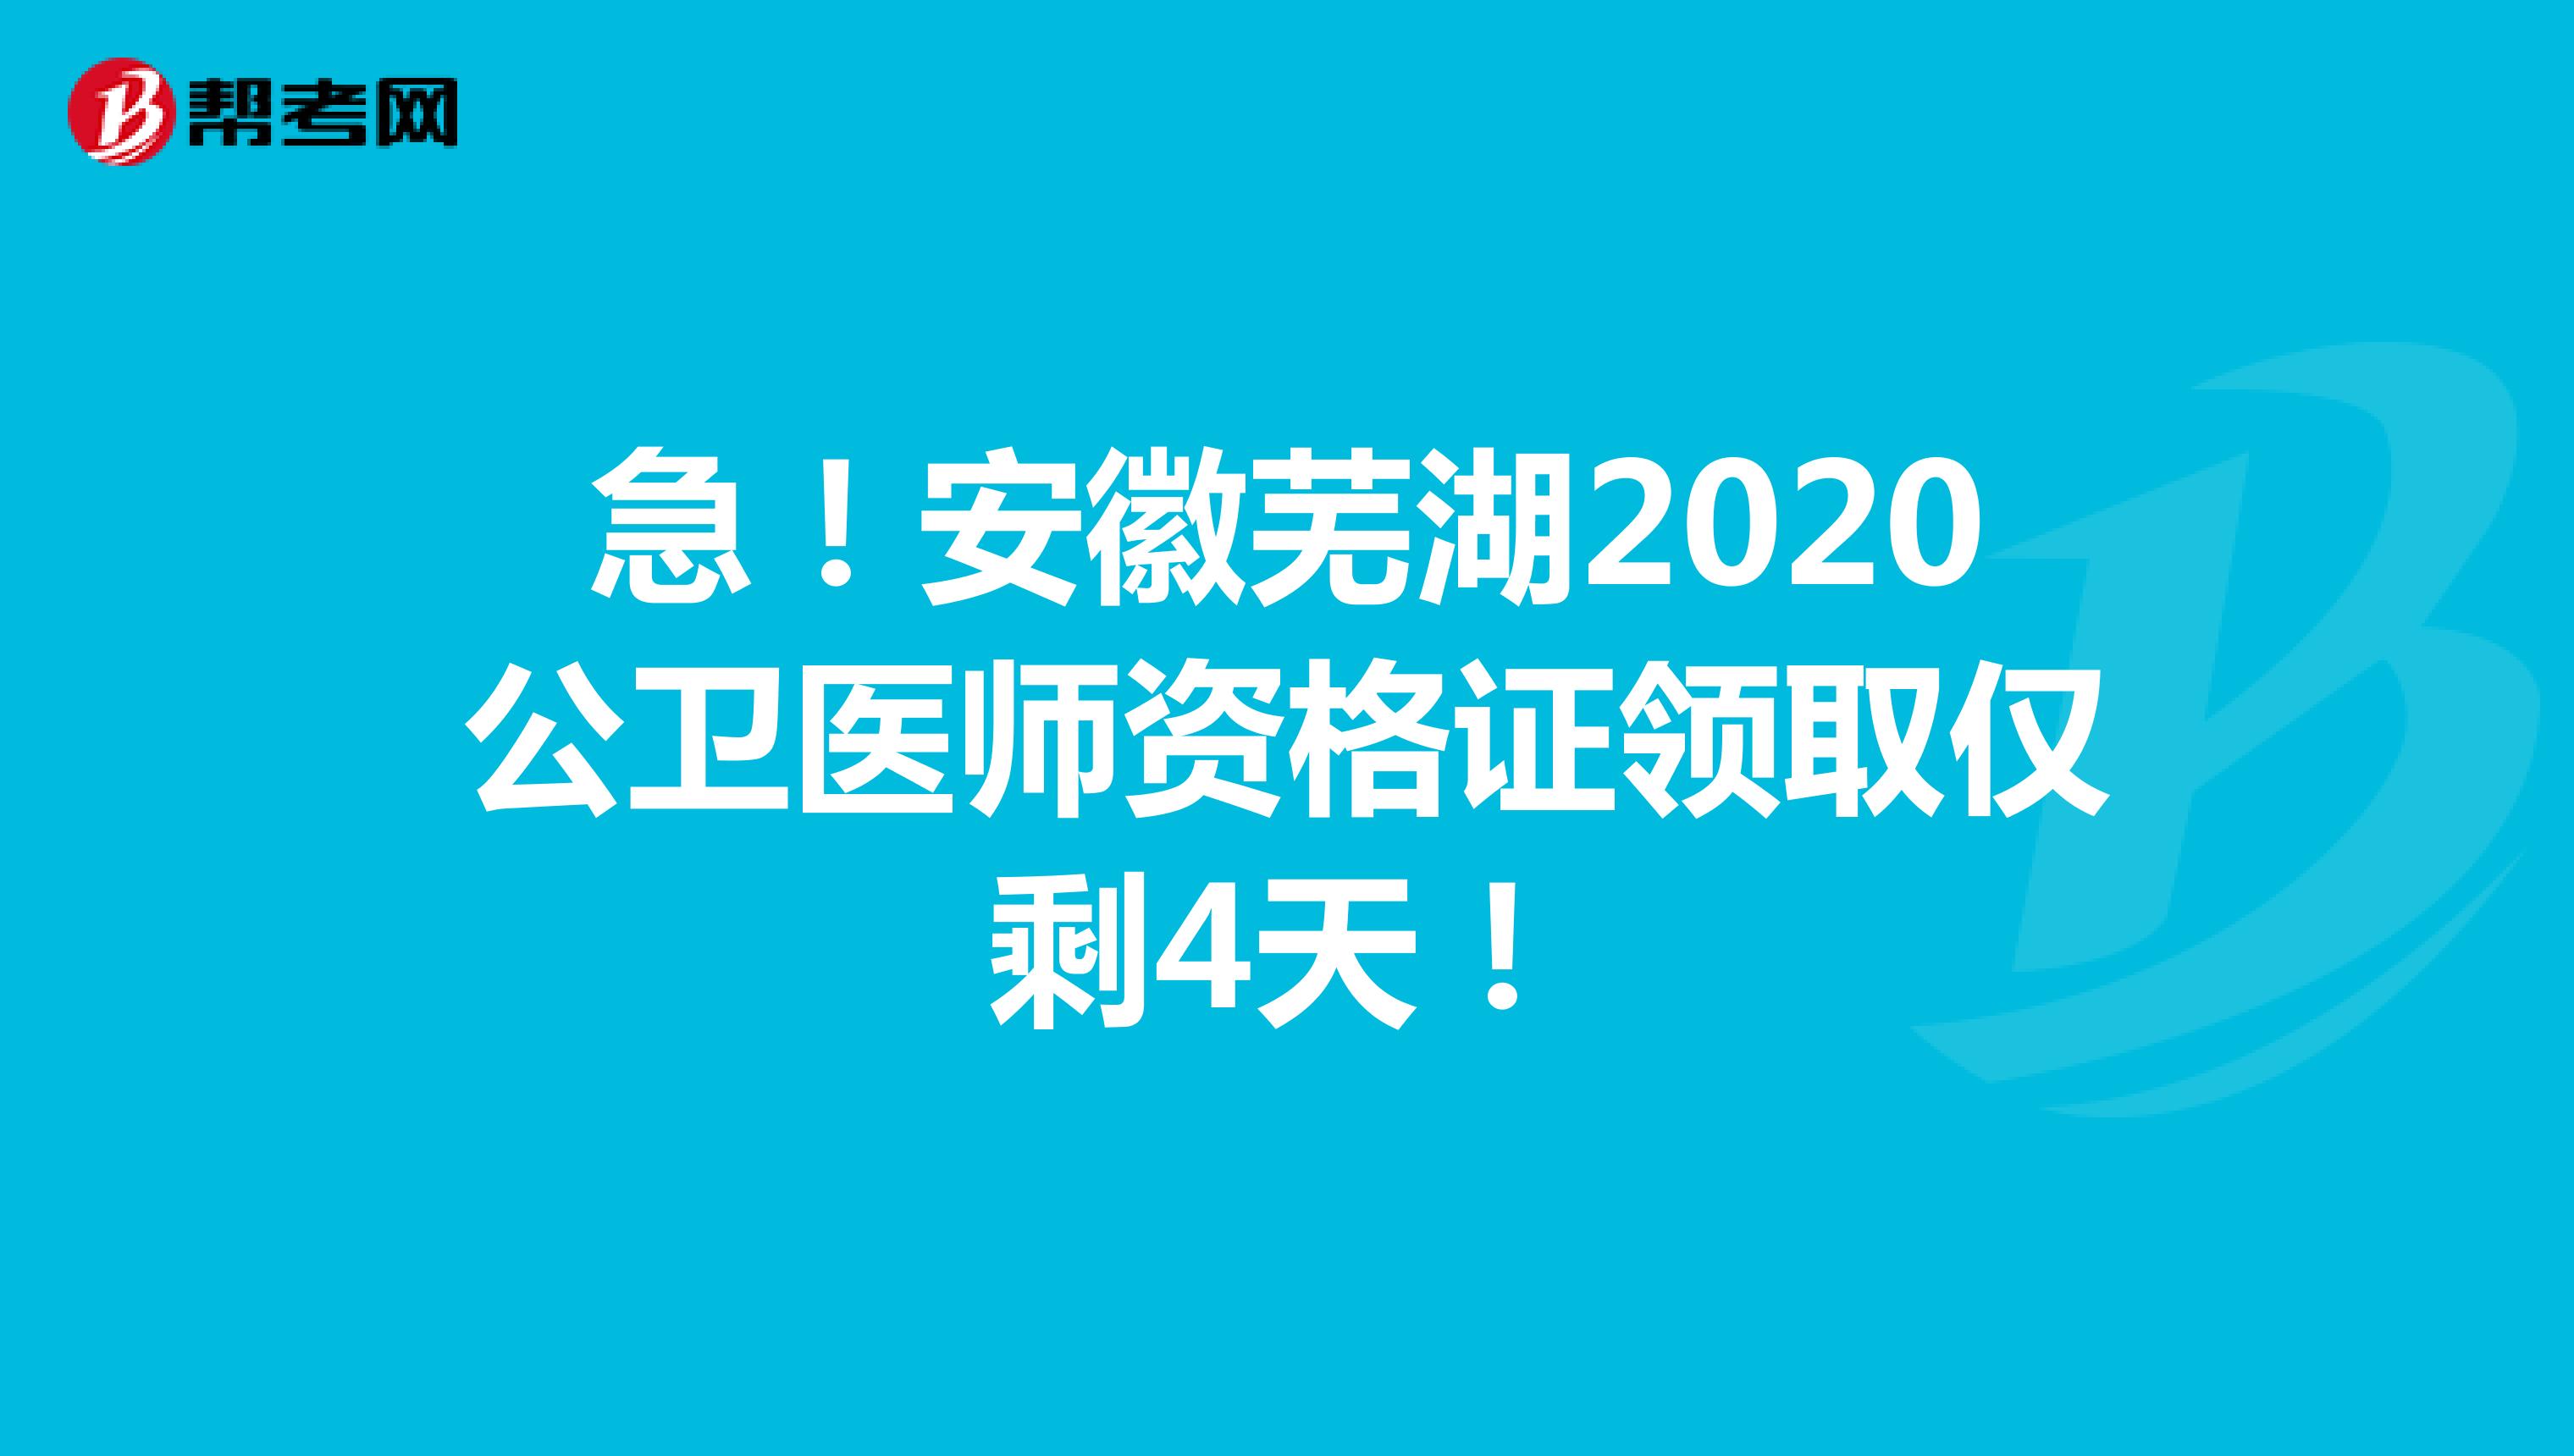 急！安徽芜湖2020公卫医师资格证领取仅剩4天！